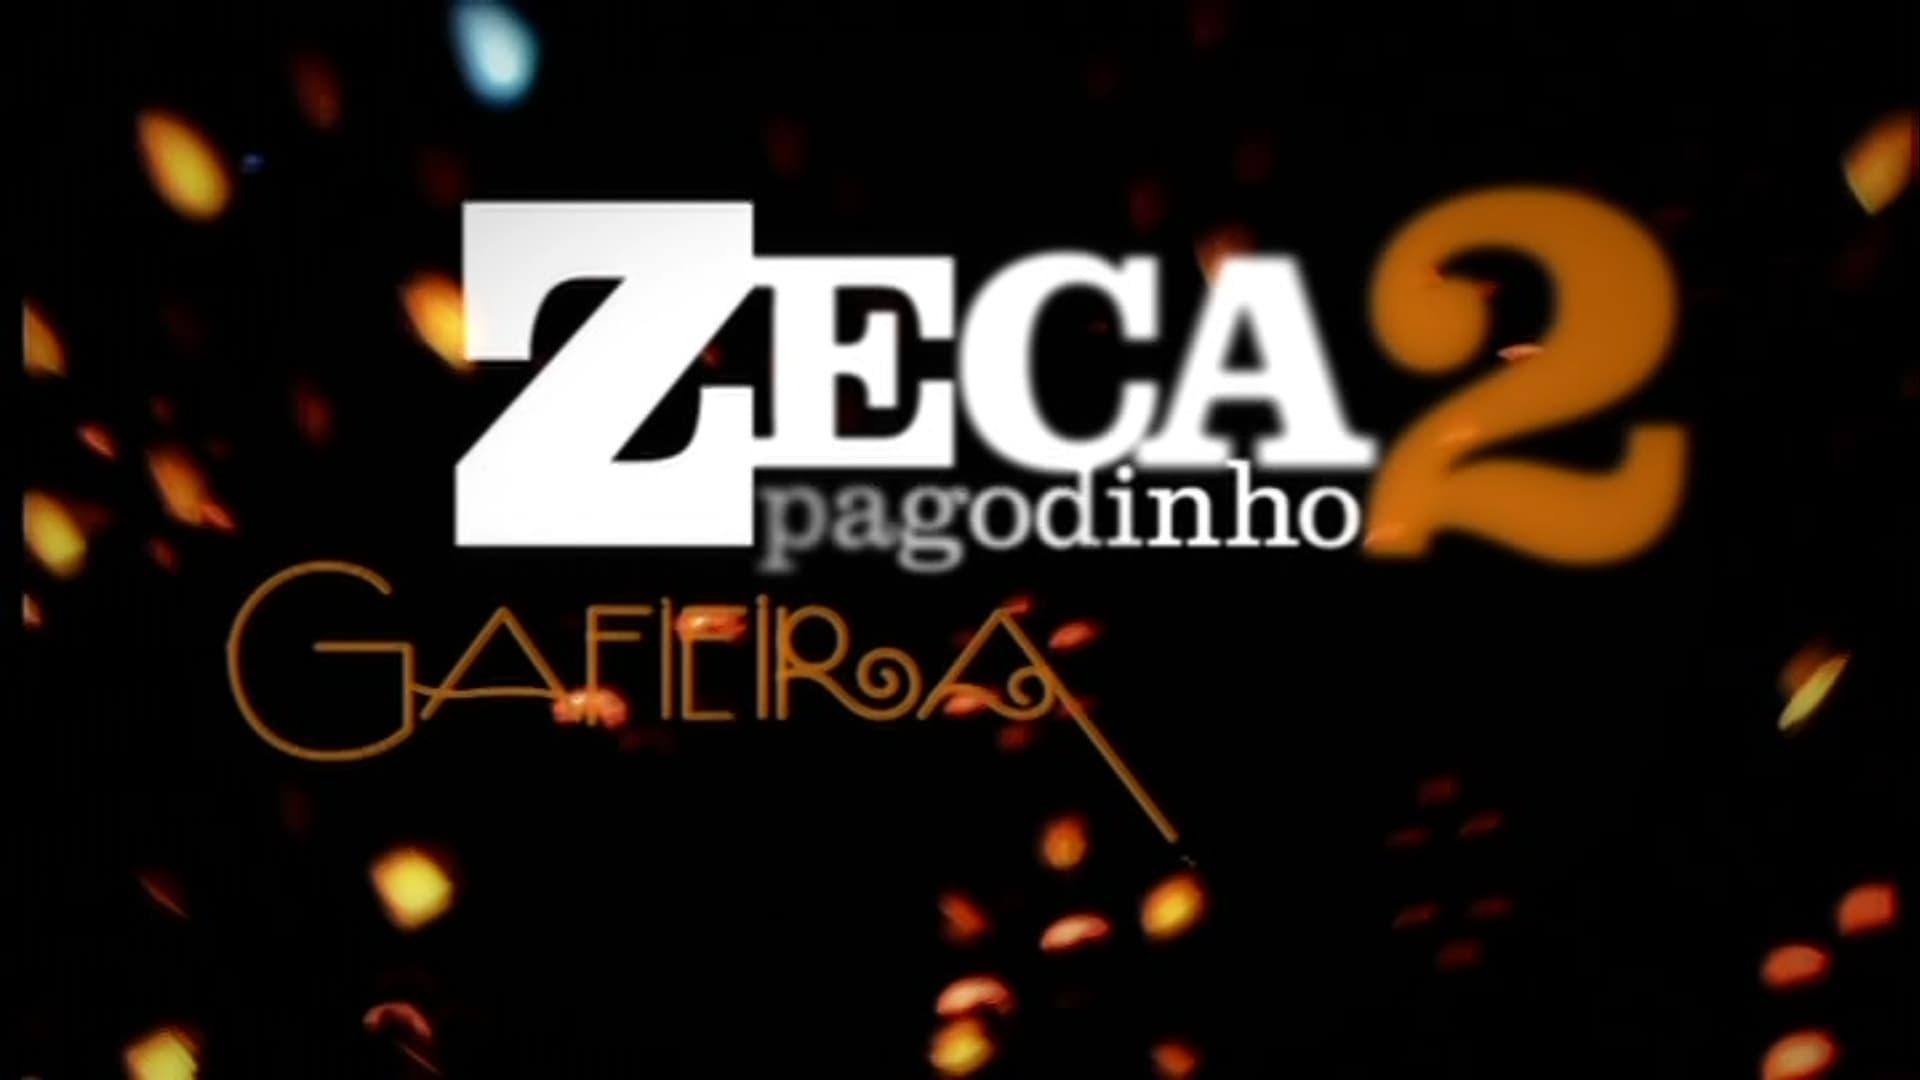 Acústico MTV: Zeca Pagodinho 2 - Gafieira backdrop